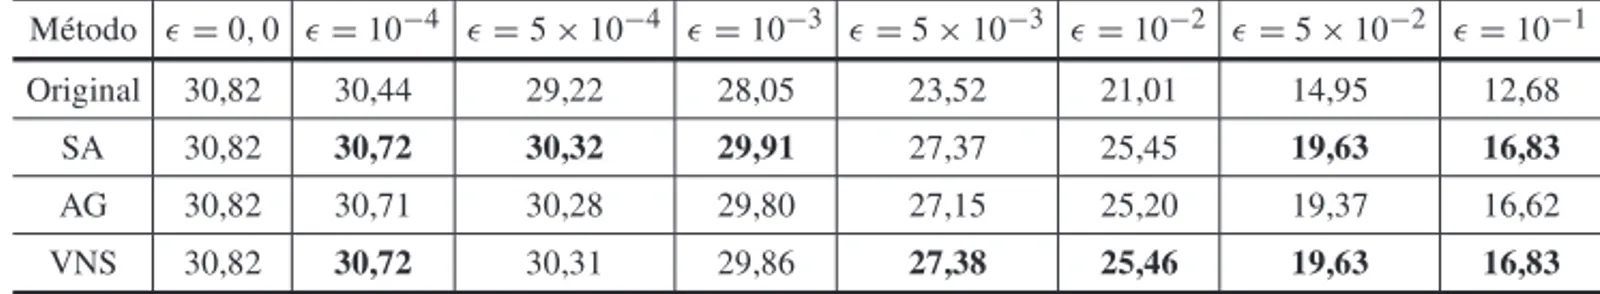 Tabela 7: PSNR (dB) m´edio em relac¸˜ao `a probabilidade de erro (ǫ) do canal com N = 256